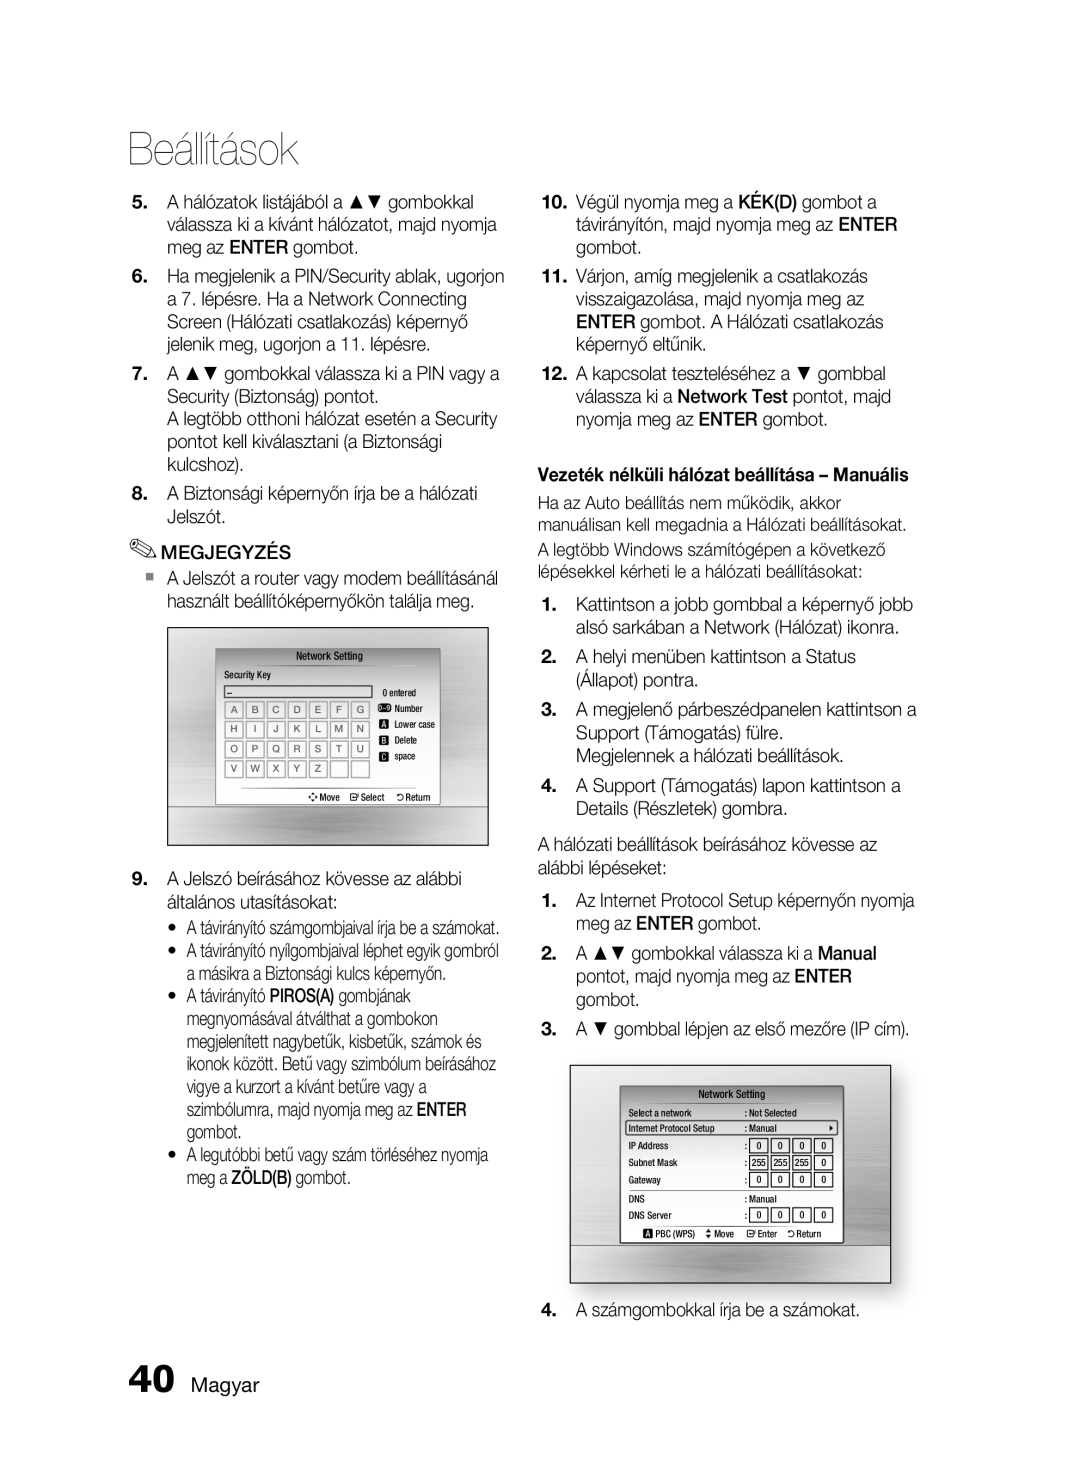 Samsung HT-C5900/XEF, HT-C5900/XEE manual Magyar, Vezeték nélküli hálózat beállítása - Manuális, Beállítások 